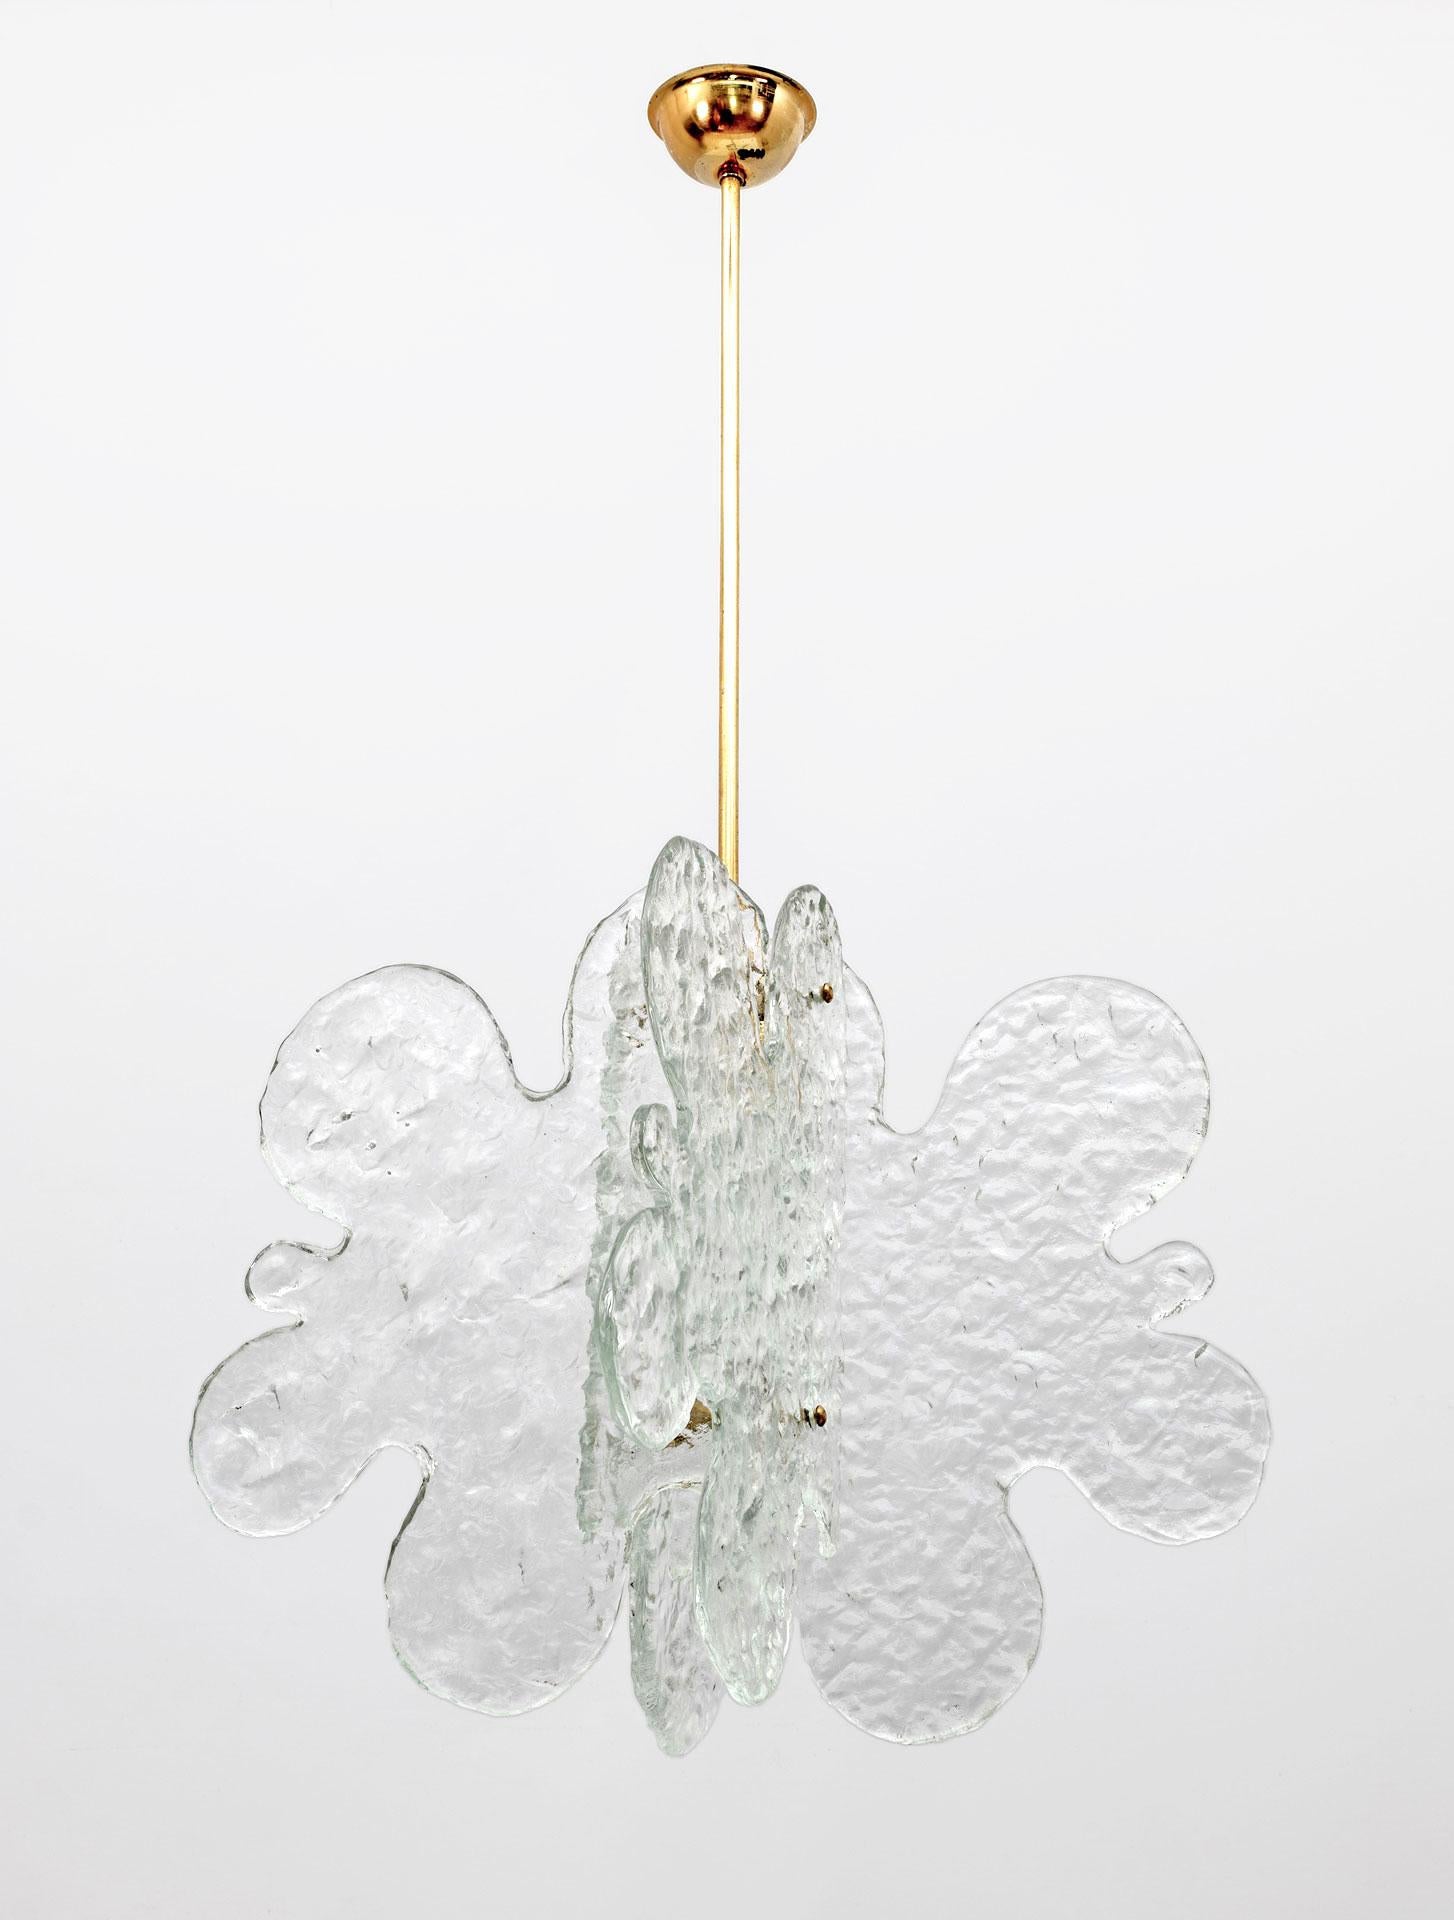 Lustre en verre de Murano conçu par Carlo Nason et fabriqué par Mazzega dans les années 1970, caractérisé par quatre feuilles de verre en forme de nuage et structurées, reliées par un cadre central en laiton. La longueur de la tige peut être ajustée